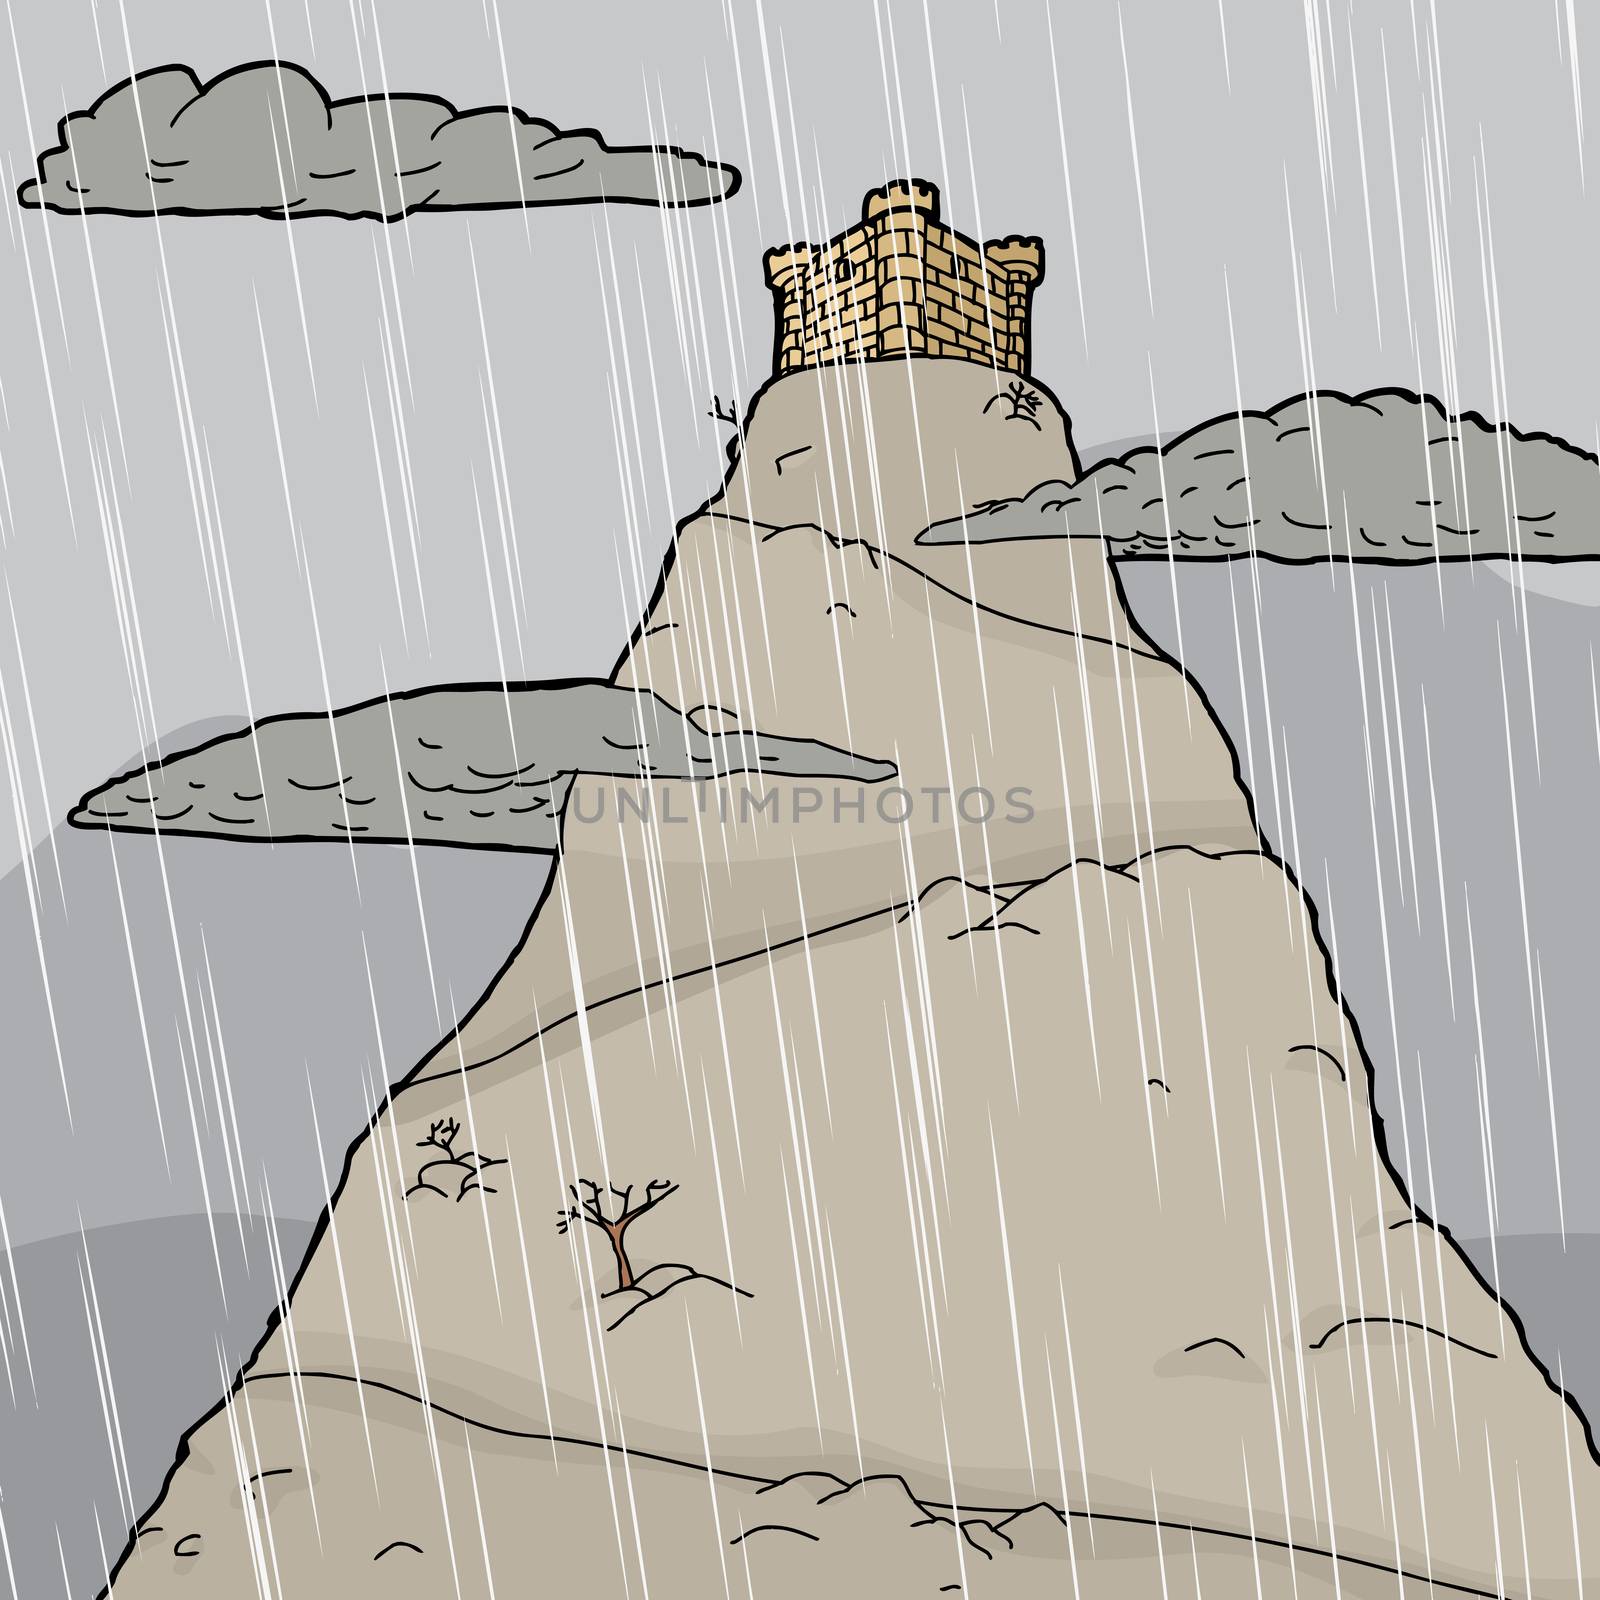 Single castle on mountain summit in rain storm